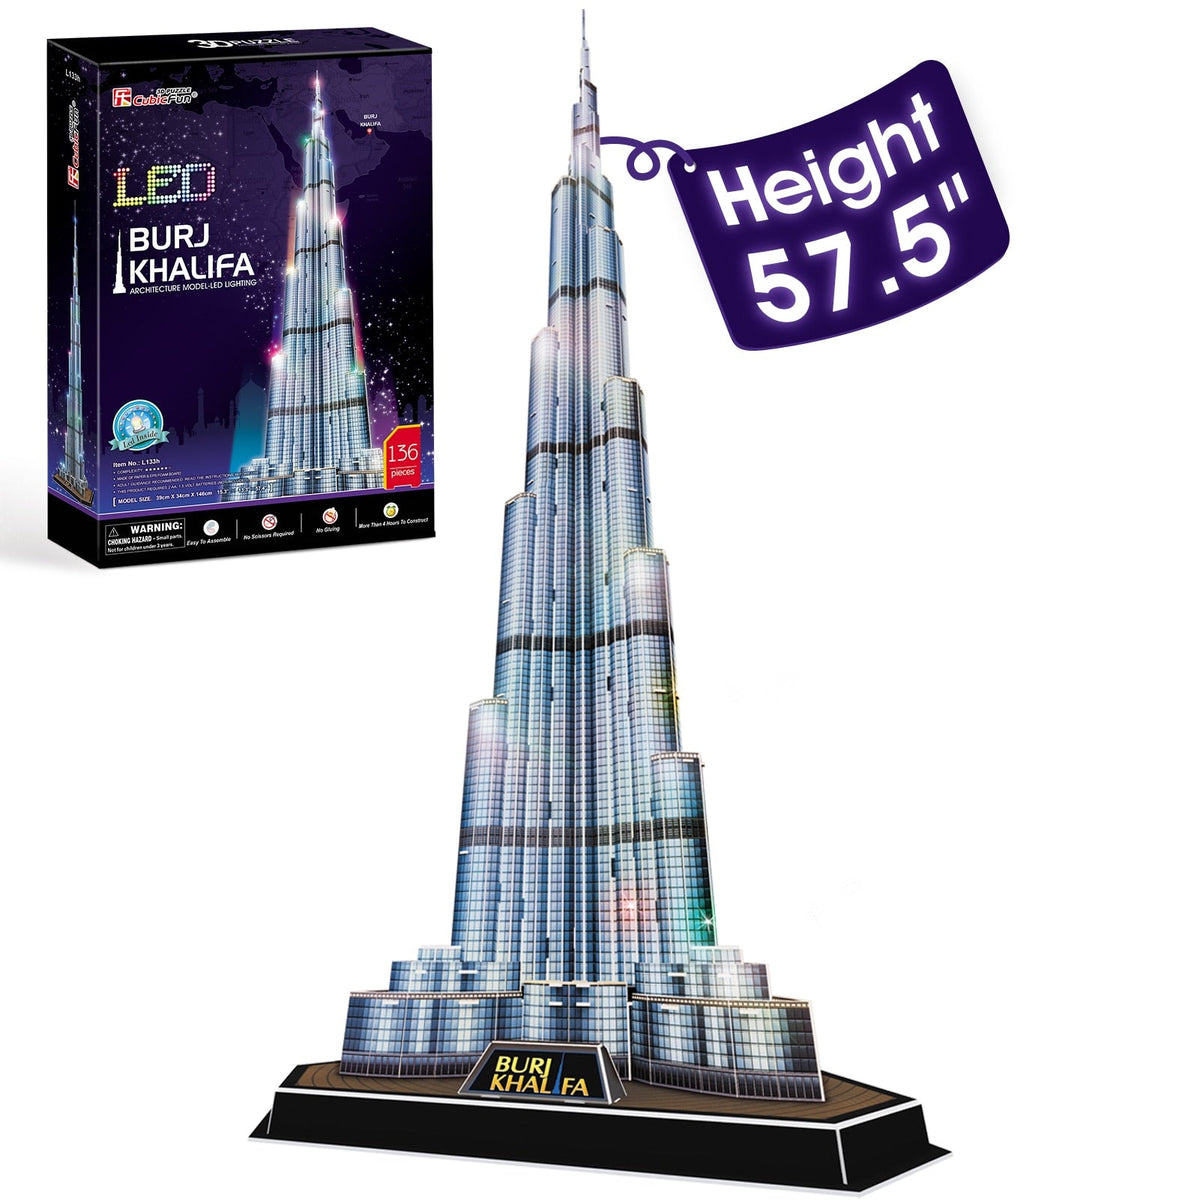 Dubai Burj Khalifa Architecture 3D Model Building Puzzle - Notbrand